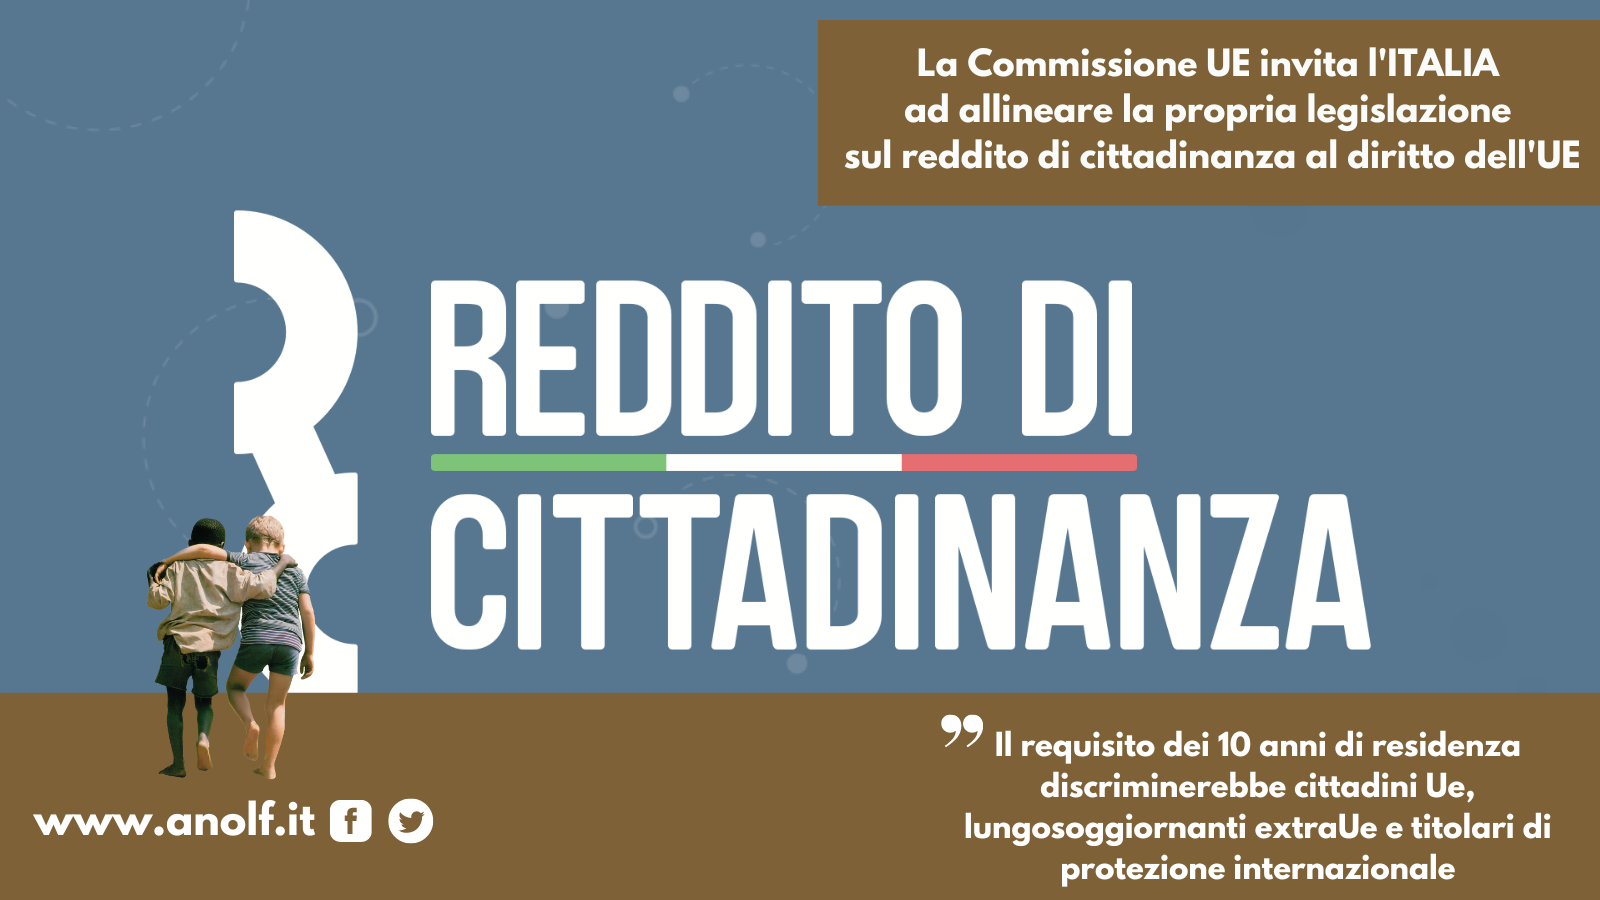 La Commissione UE invita l’ITALIA ad allineare la propria legislazione sul reddito di cittadinanza al diritto dell’UE